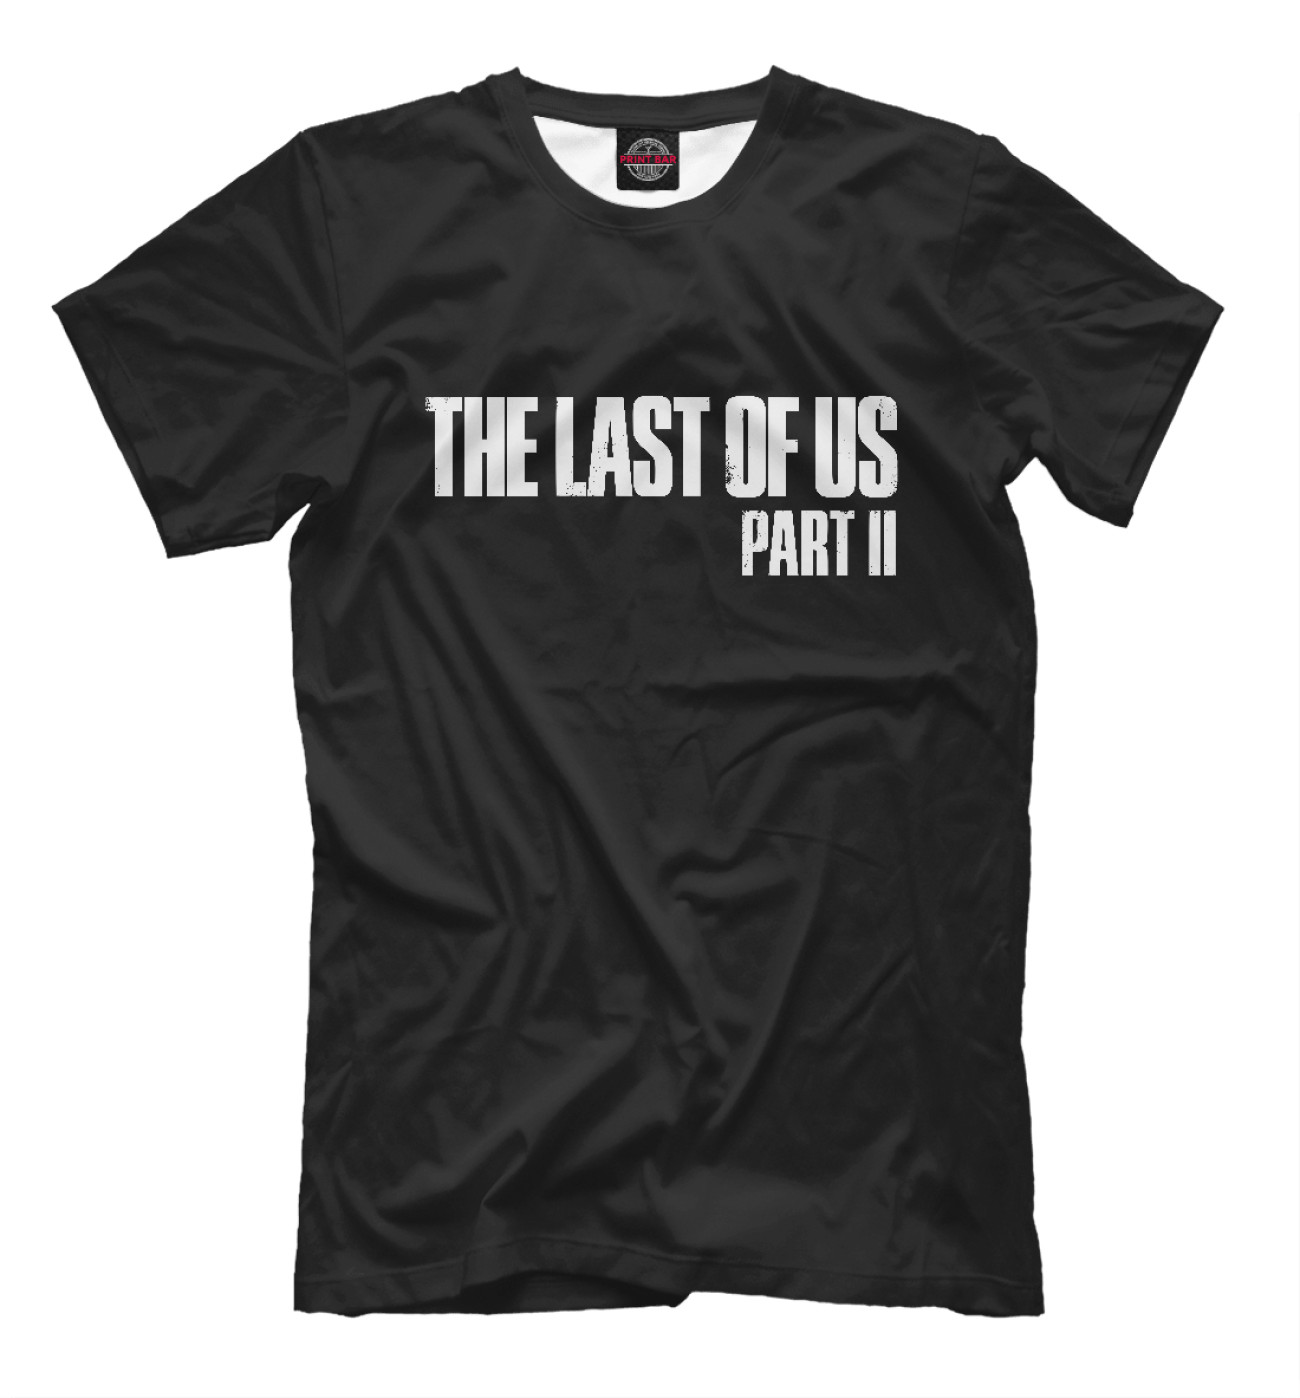 Мужская Футболка The Last of Us:Part 2, артикул: TLU-101838-fut-2